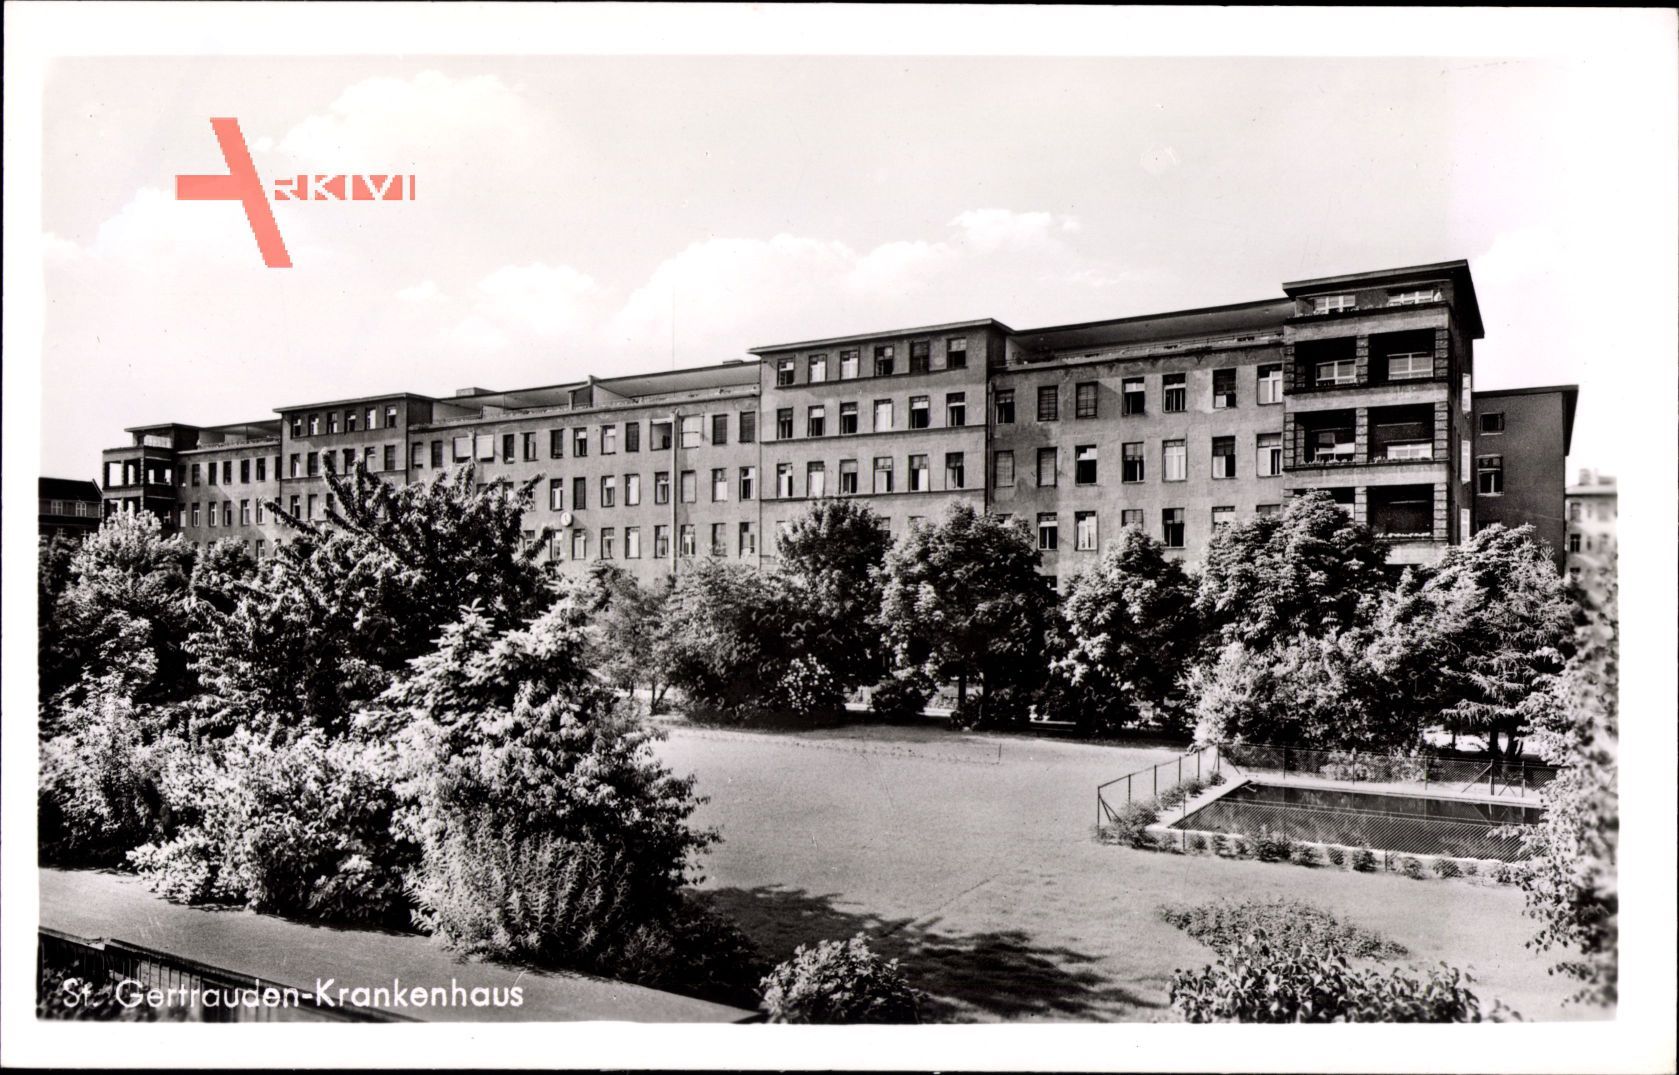 Berlin Wilmersdorf, St. Gertrauden Krankenhaus, Paretzerstr. 11